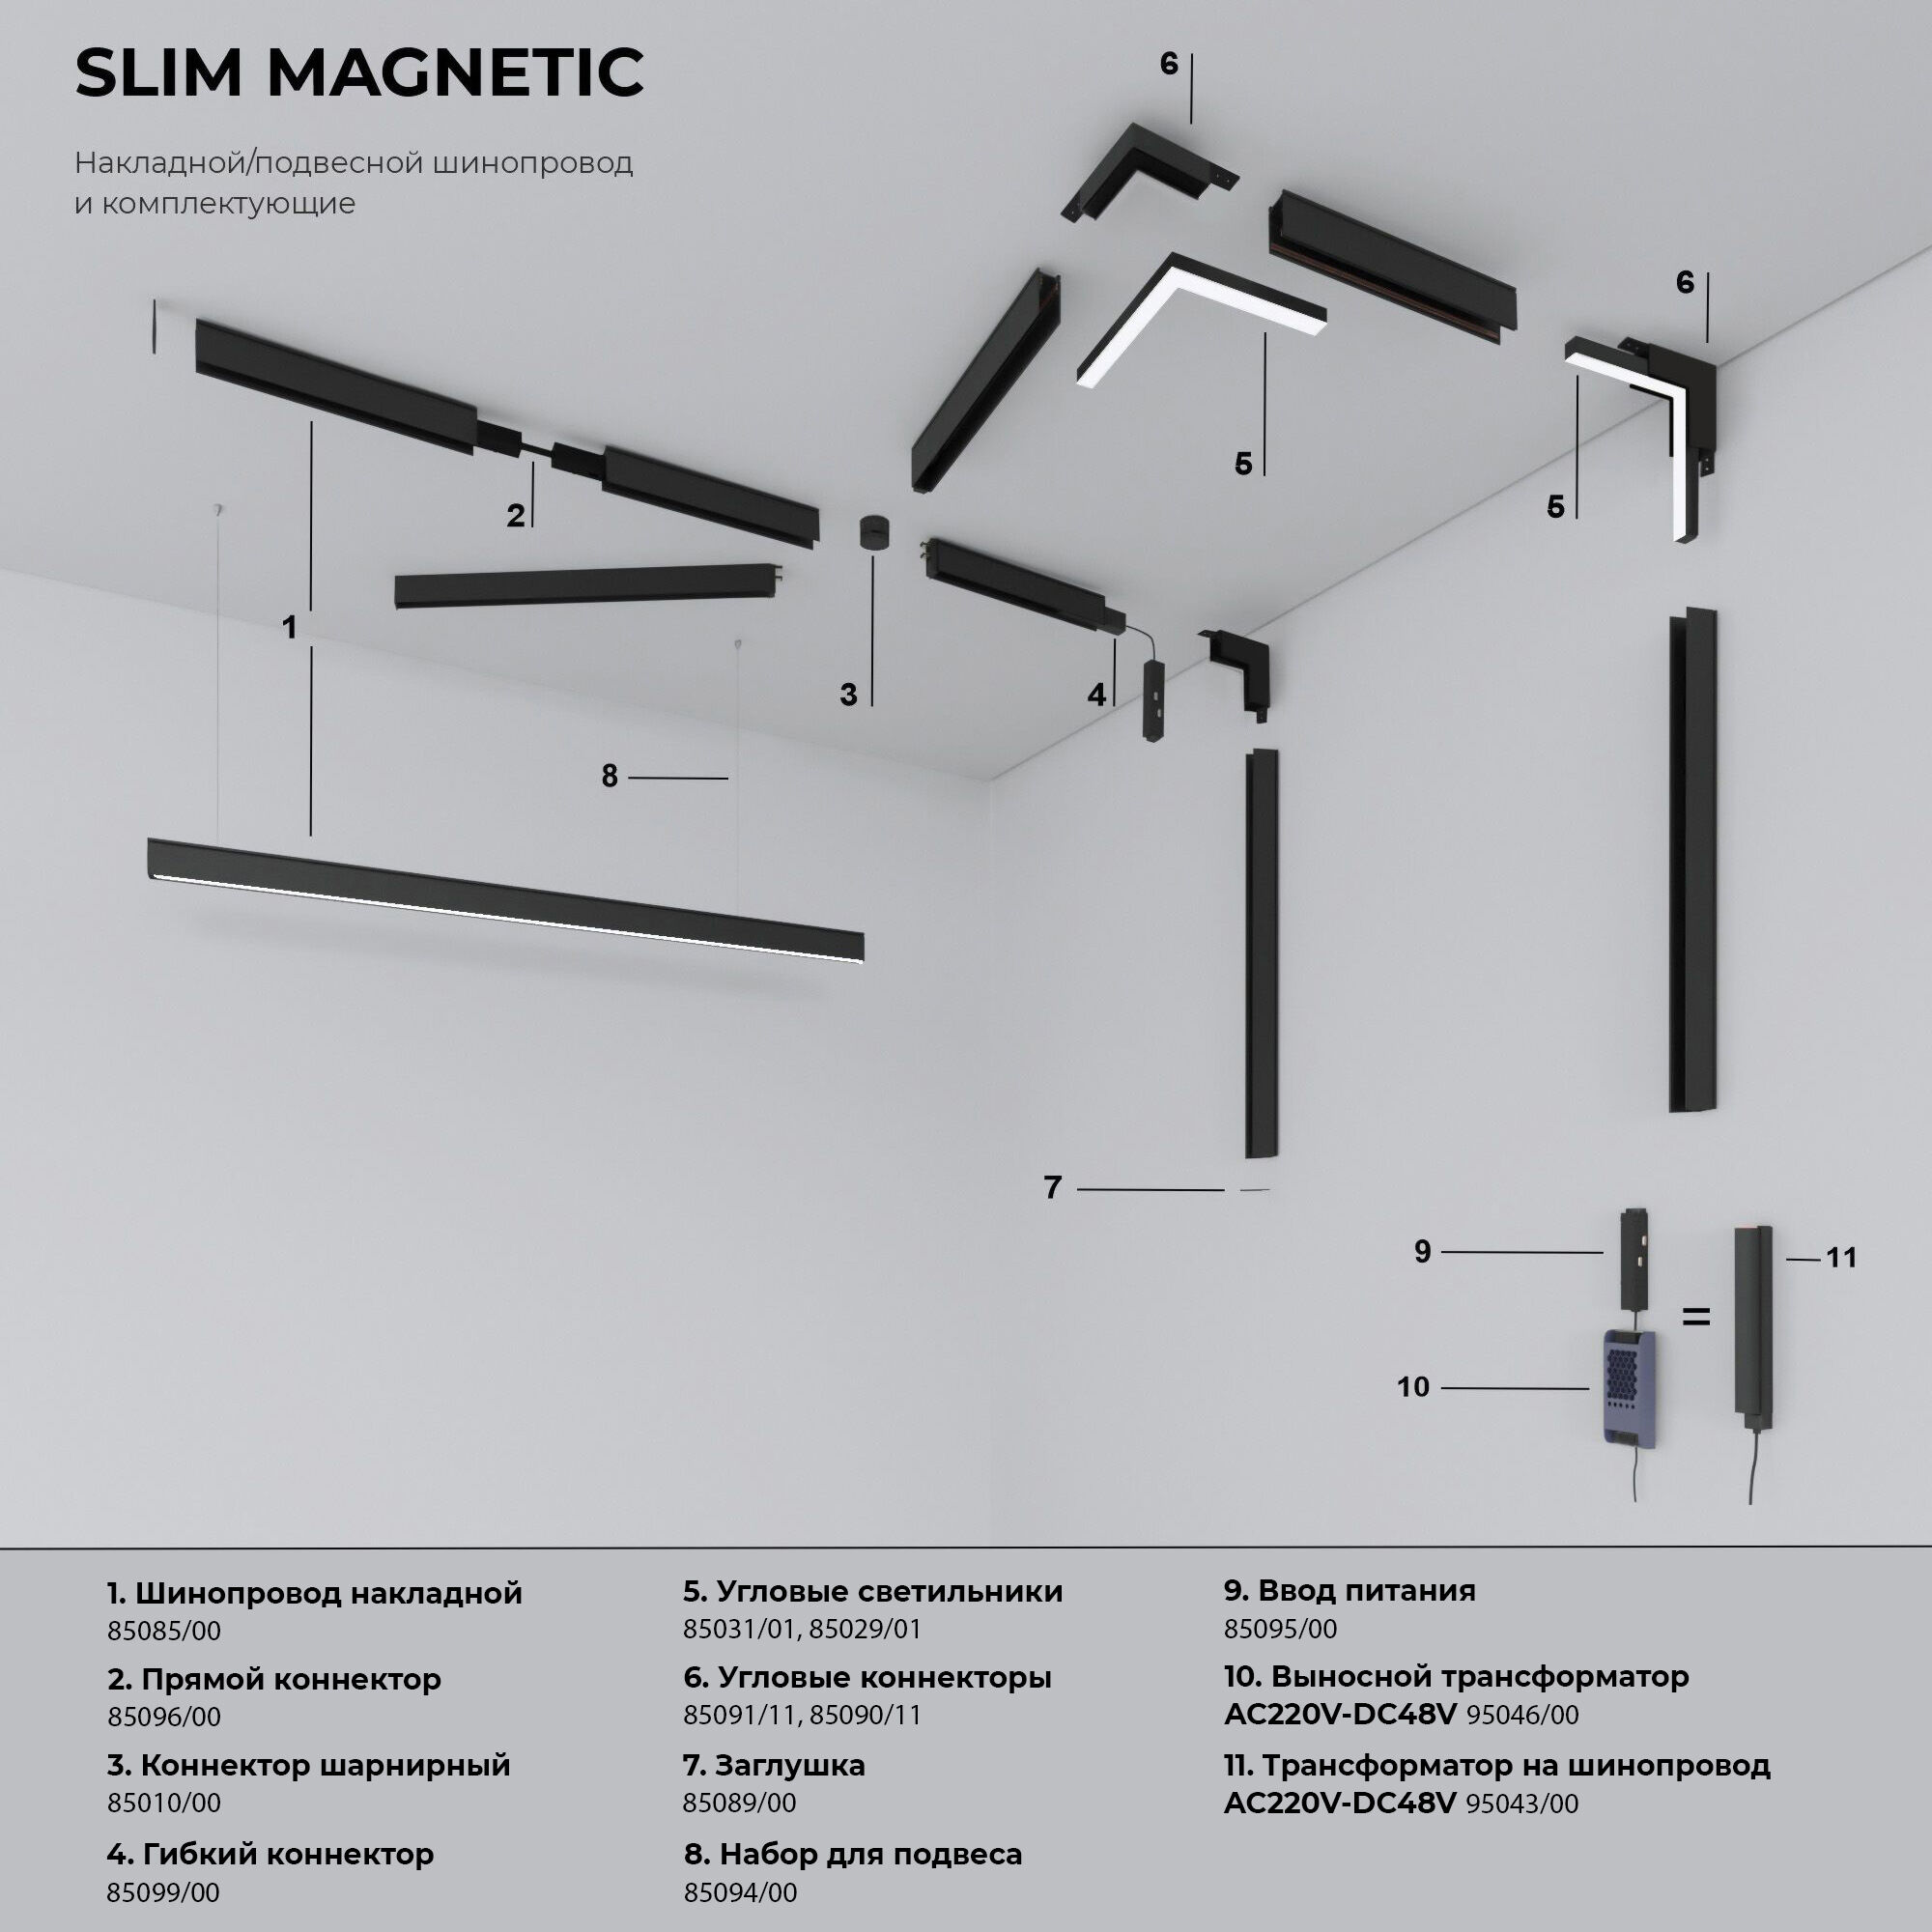 Slim Magnetic Шинопровод накладной черный 1м 85085/00